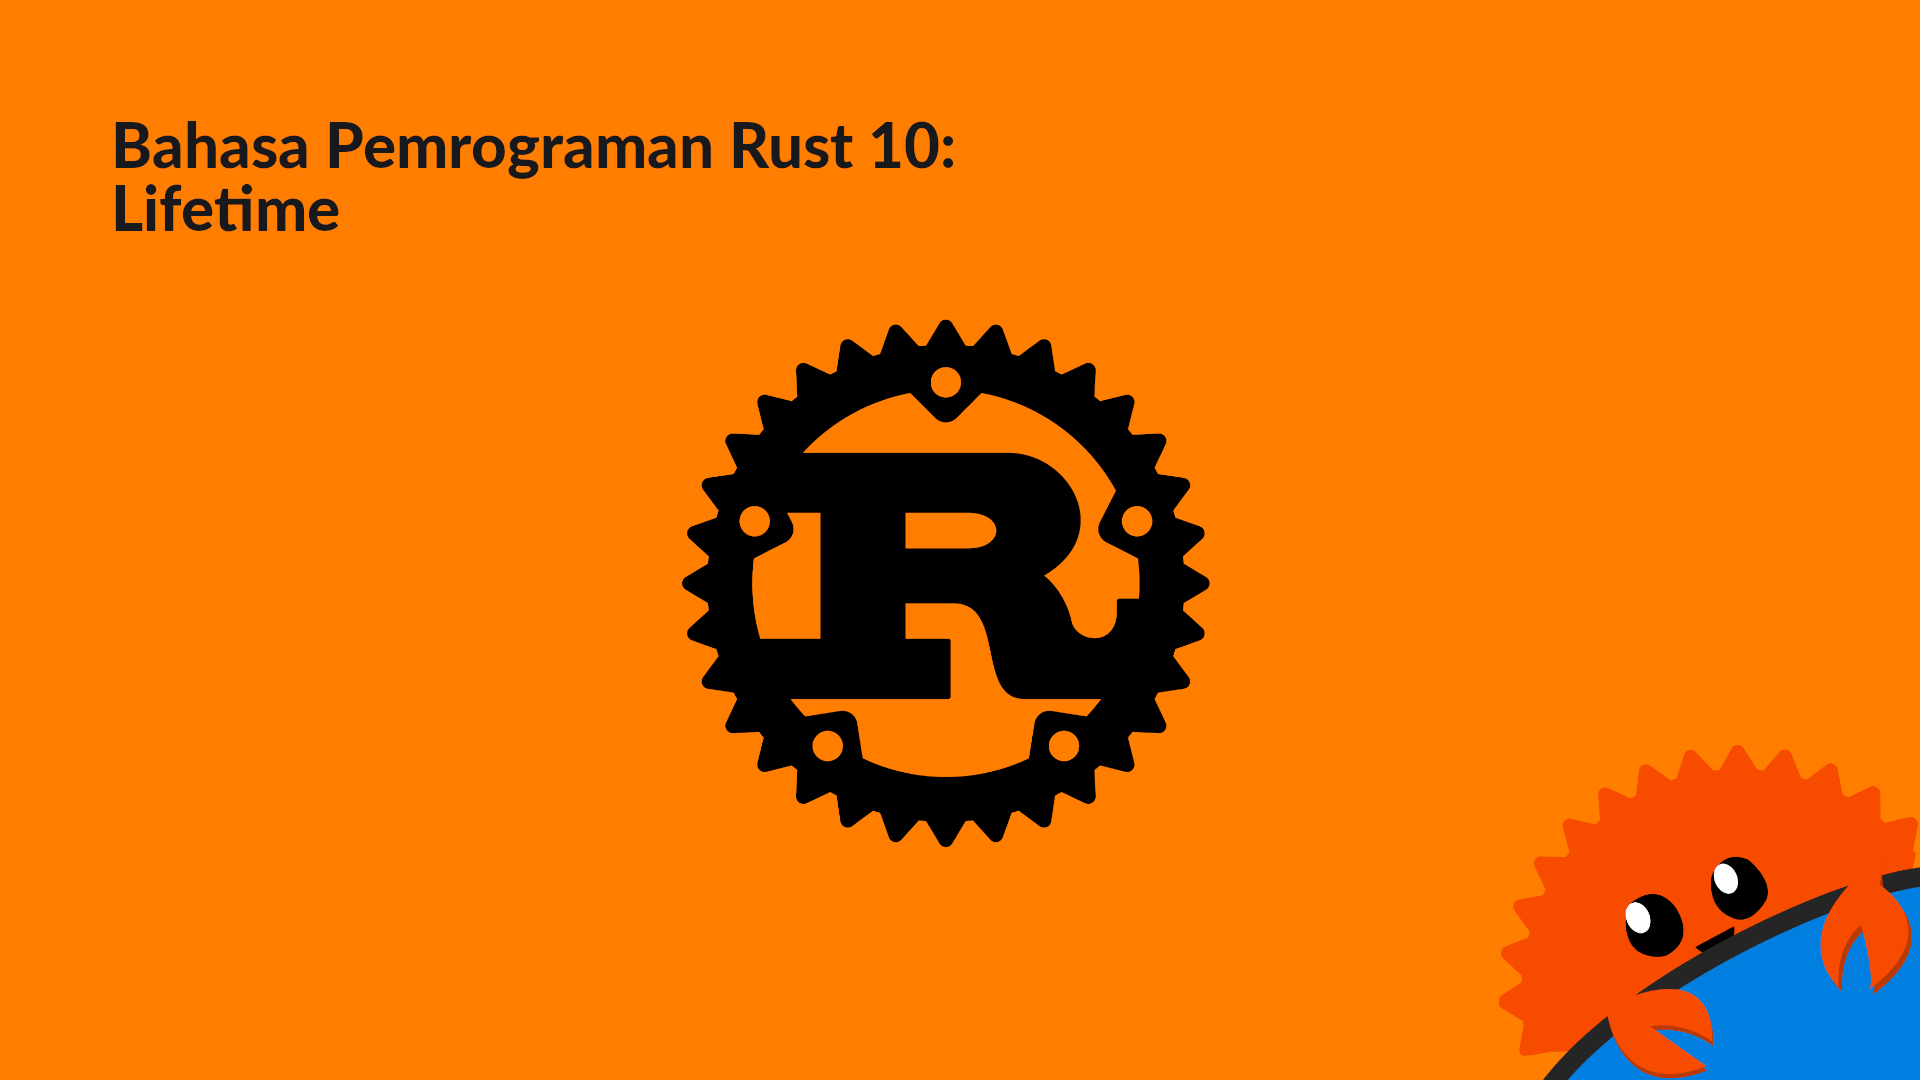 Bahasa Pemrograman Rust 10: Lifetime